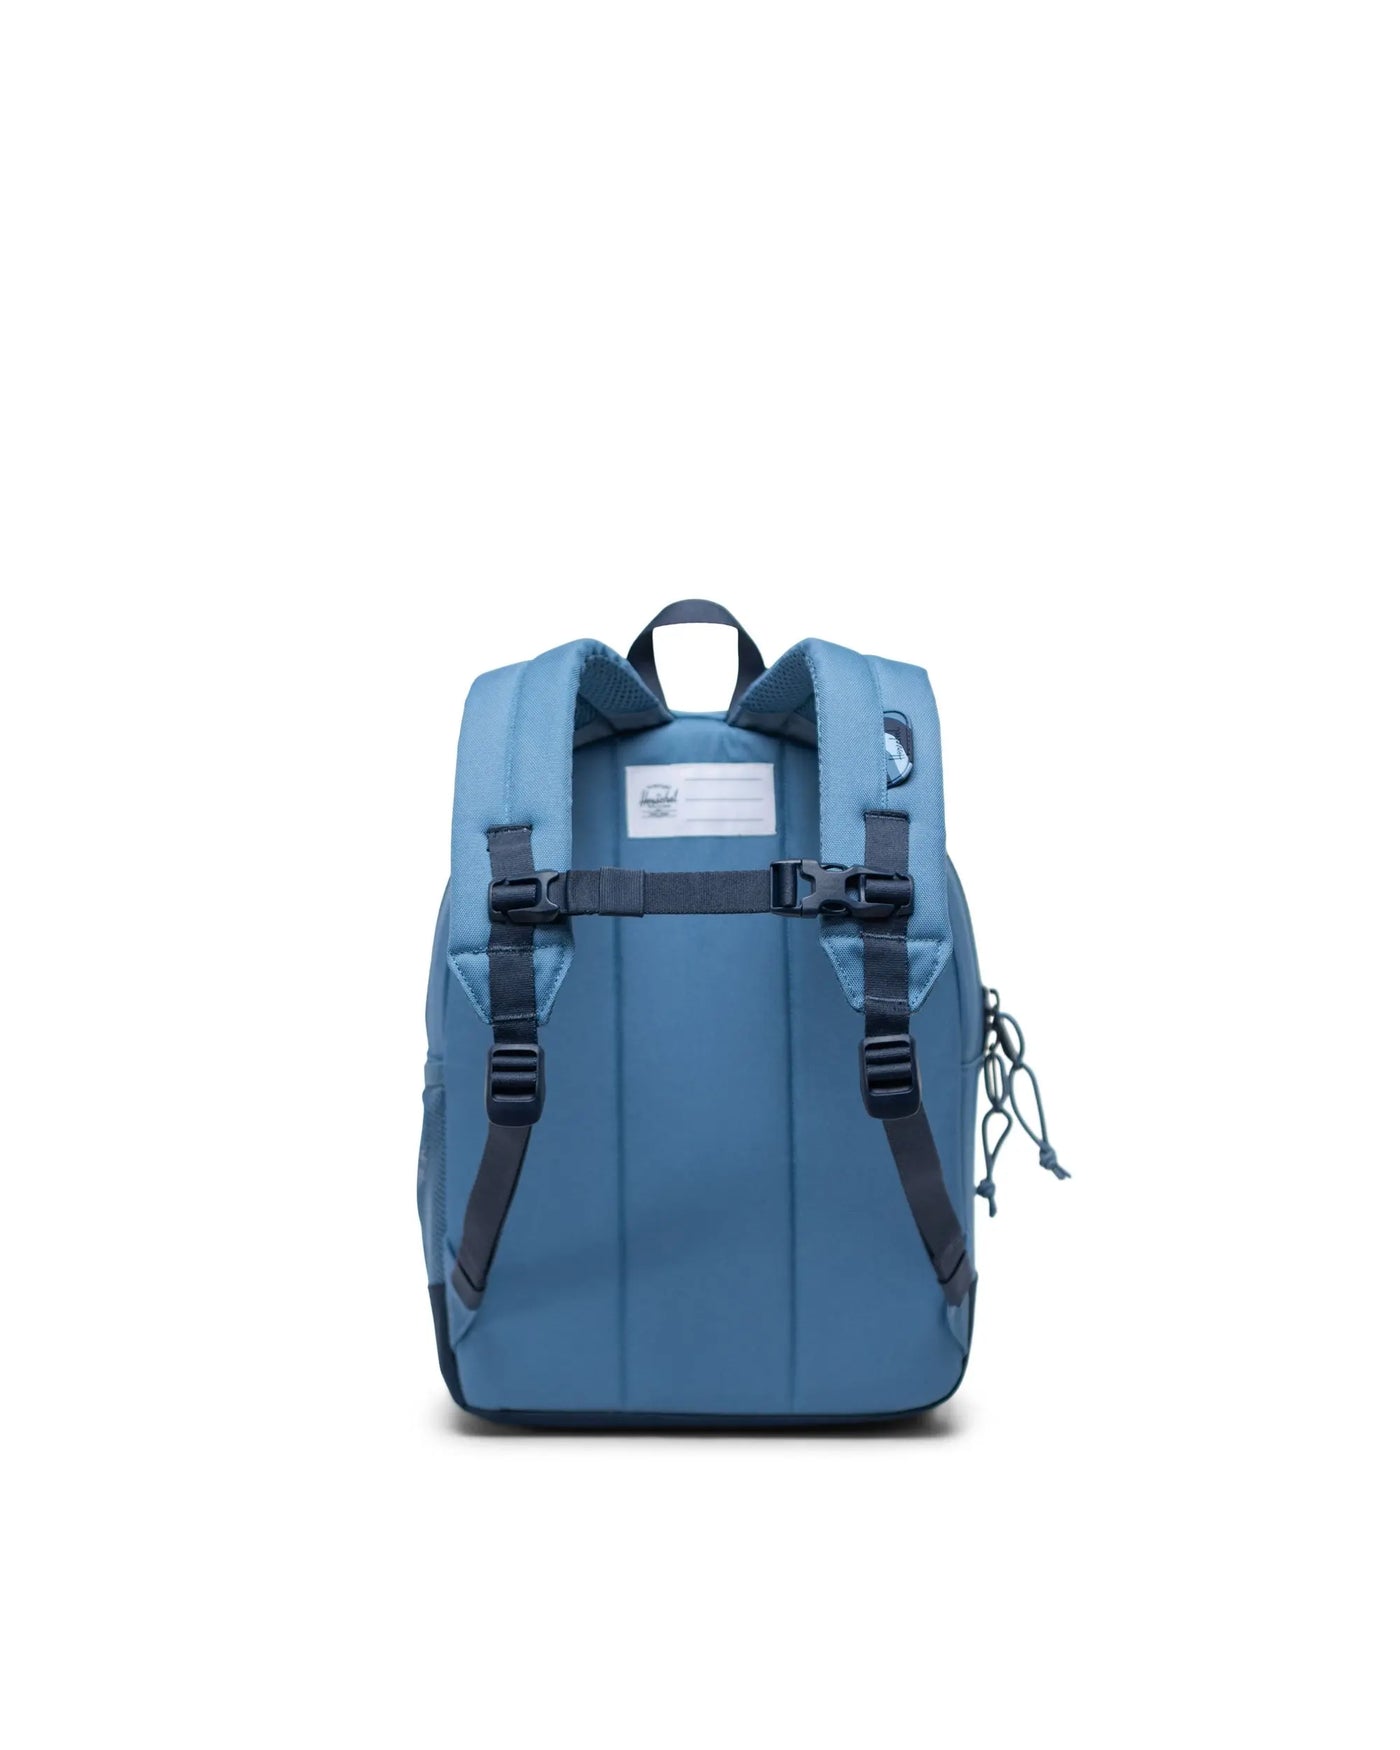 Herschel Heritage™ Backpack |Coronet Blue/Navy